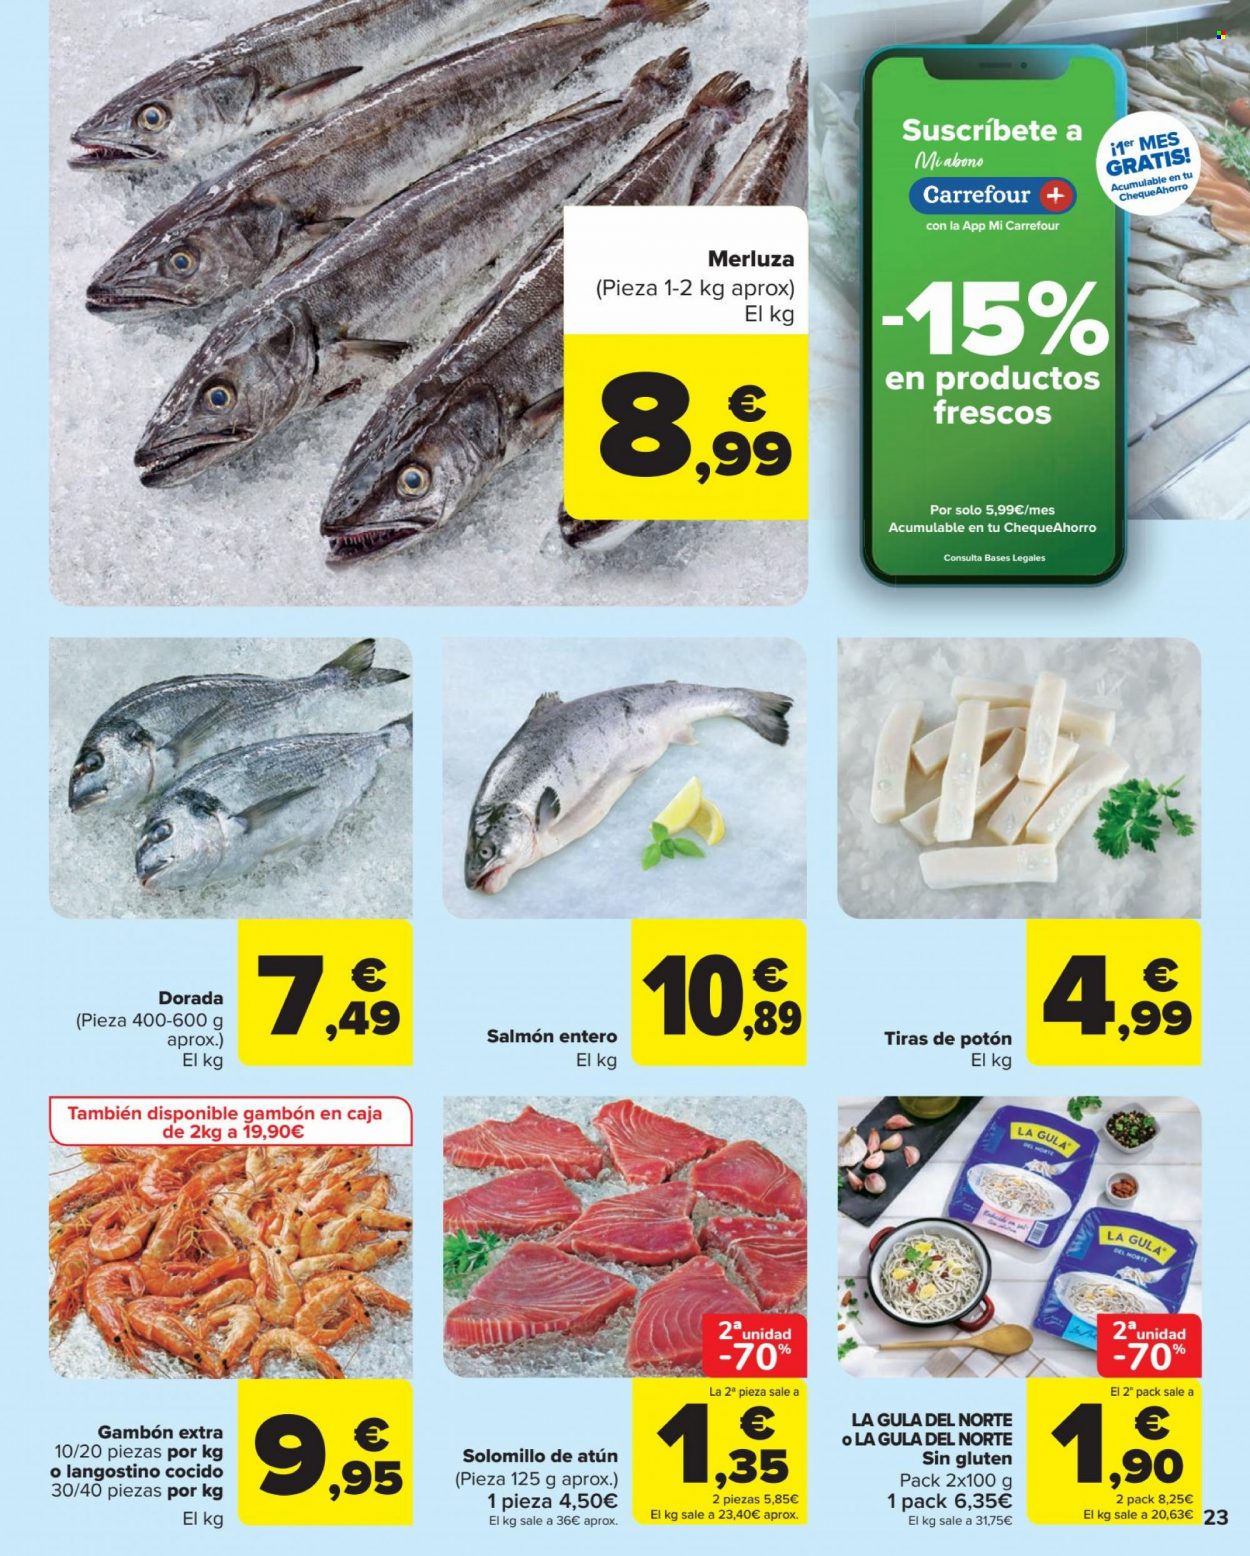 thumbnail - Folleto actual Carrefour - 27/01/23 - 13/02/23 - Ventas - atún, merluza, dorada pescado, gambón, La Gula del Norte, langostino, salmón, pescado, solomillo de atún, potón, plato terminado, langostino cocido. Página 23.